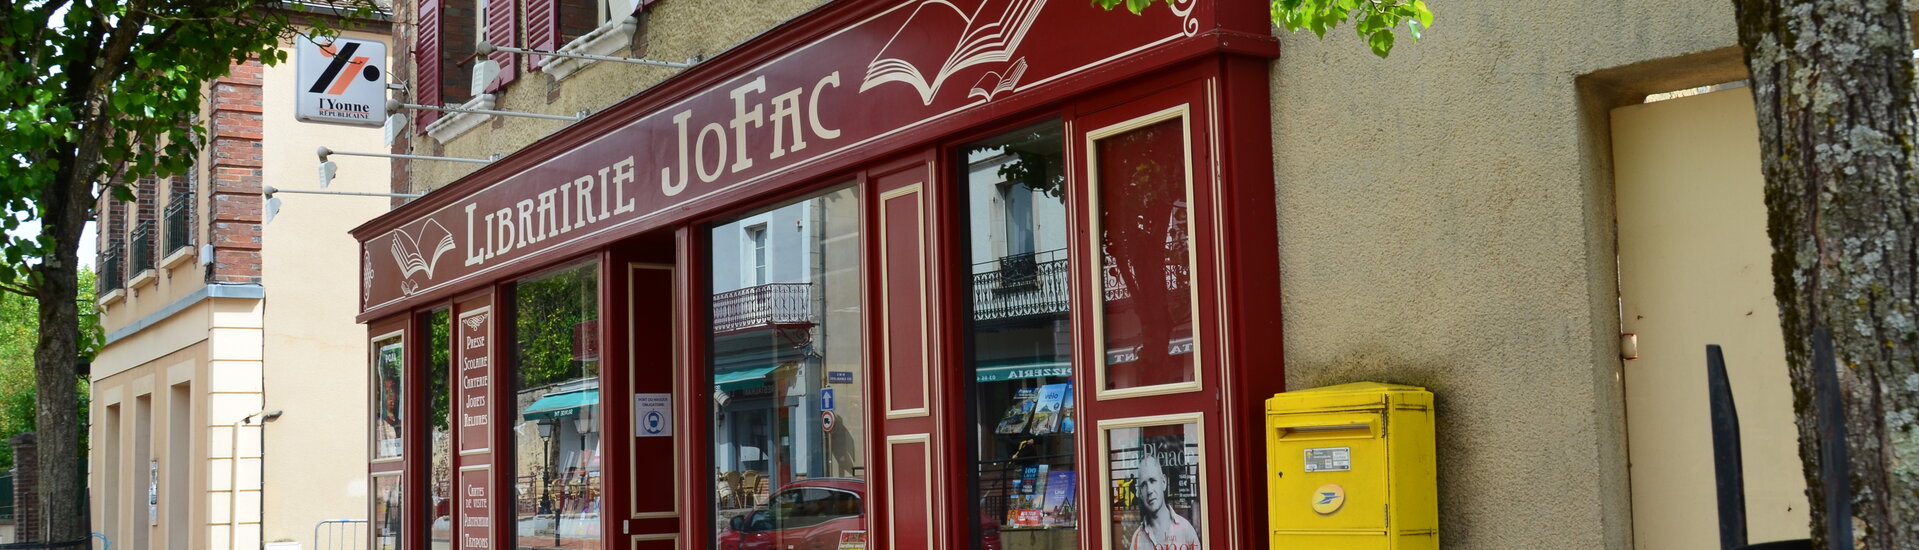 Librairie Jofac  à Toucy livres, romans, papeterie